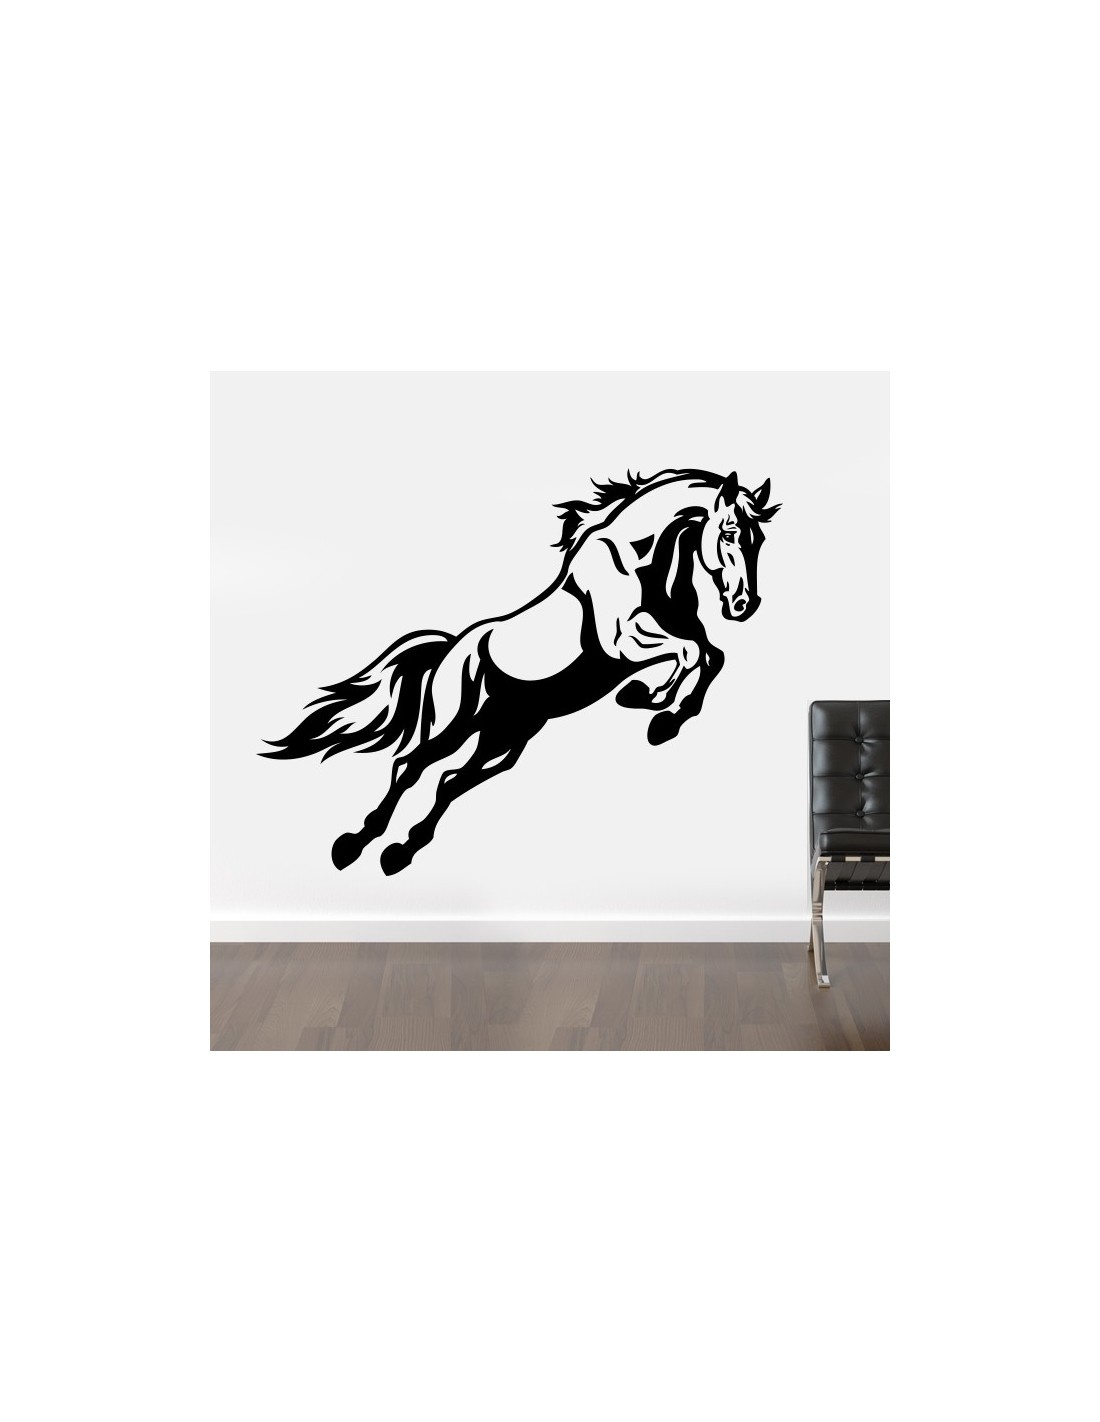 sticker et autocollant mural Déco Saut d'obstacle cheval CSO